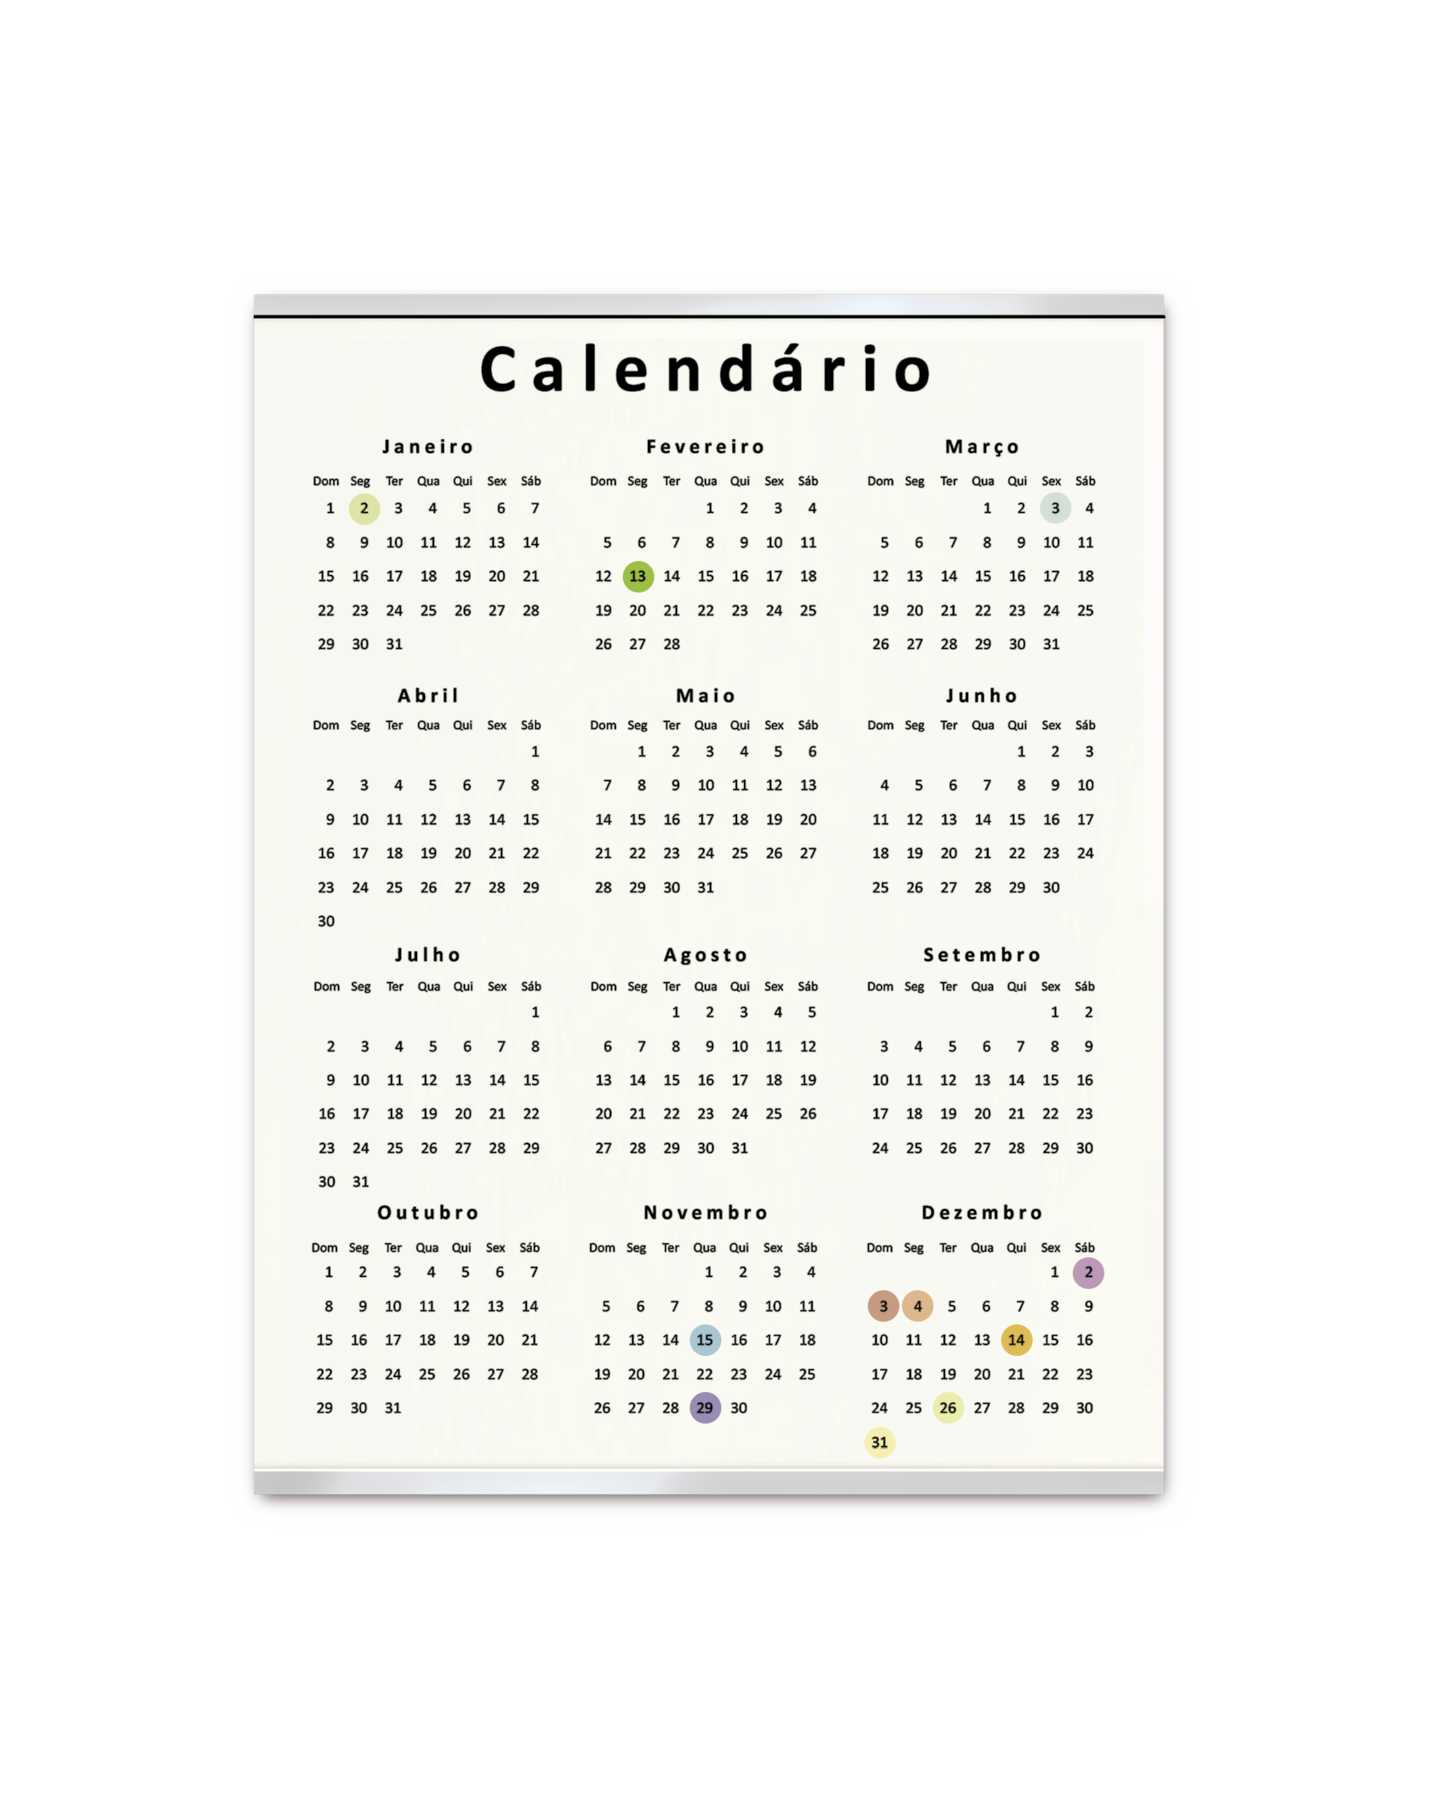 Ilustração. Página de um calendário com os meses dispostos em três colunas e quatro linhas. Há algumas datas destacadas.